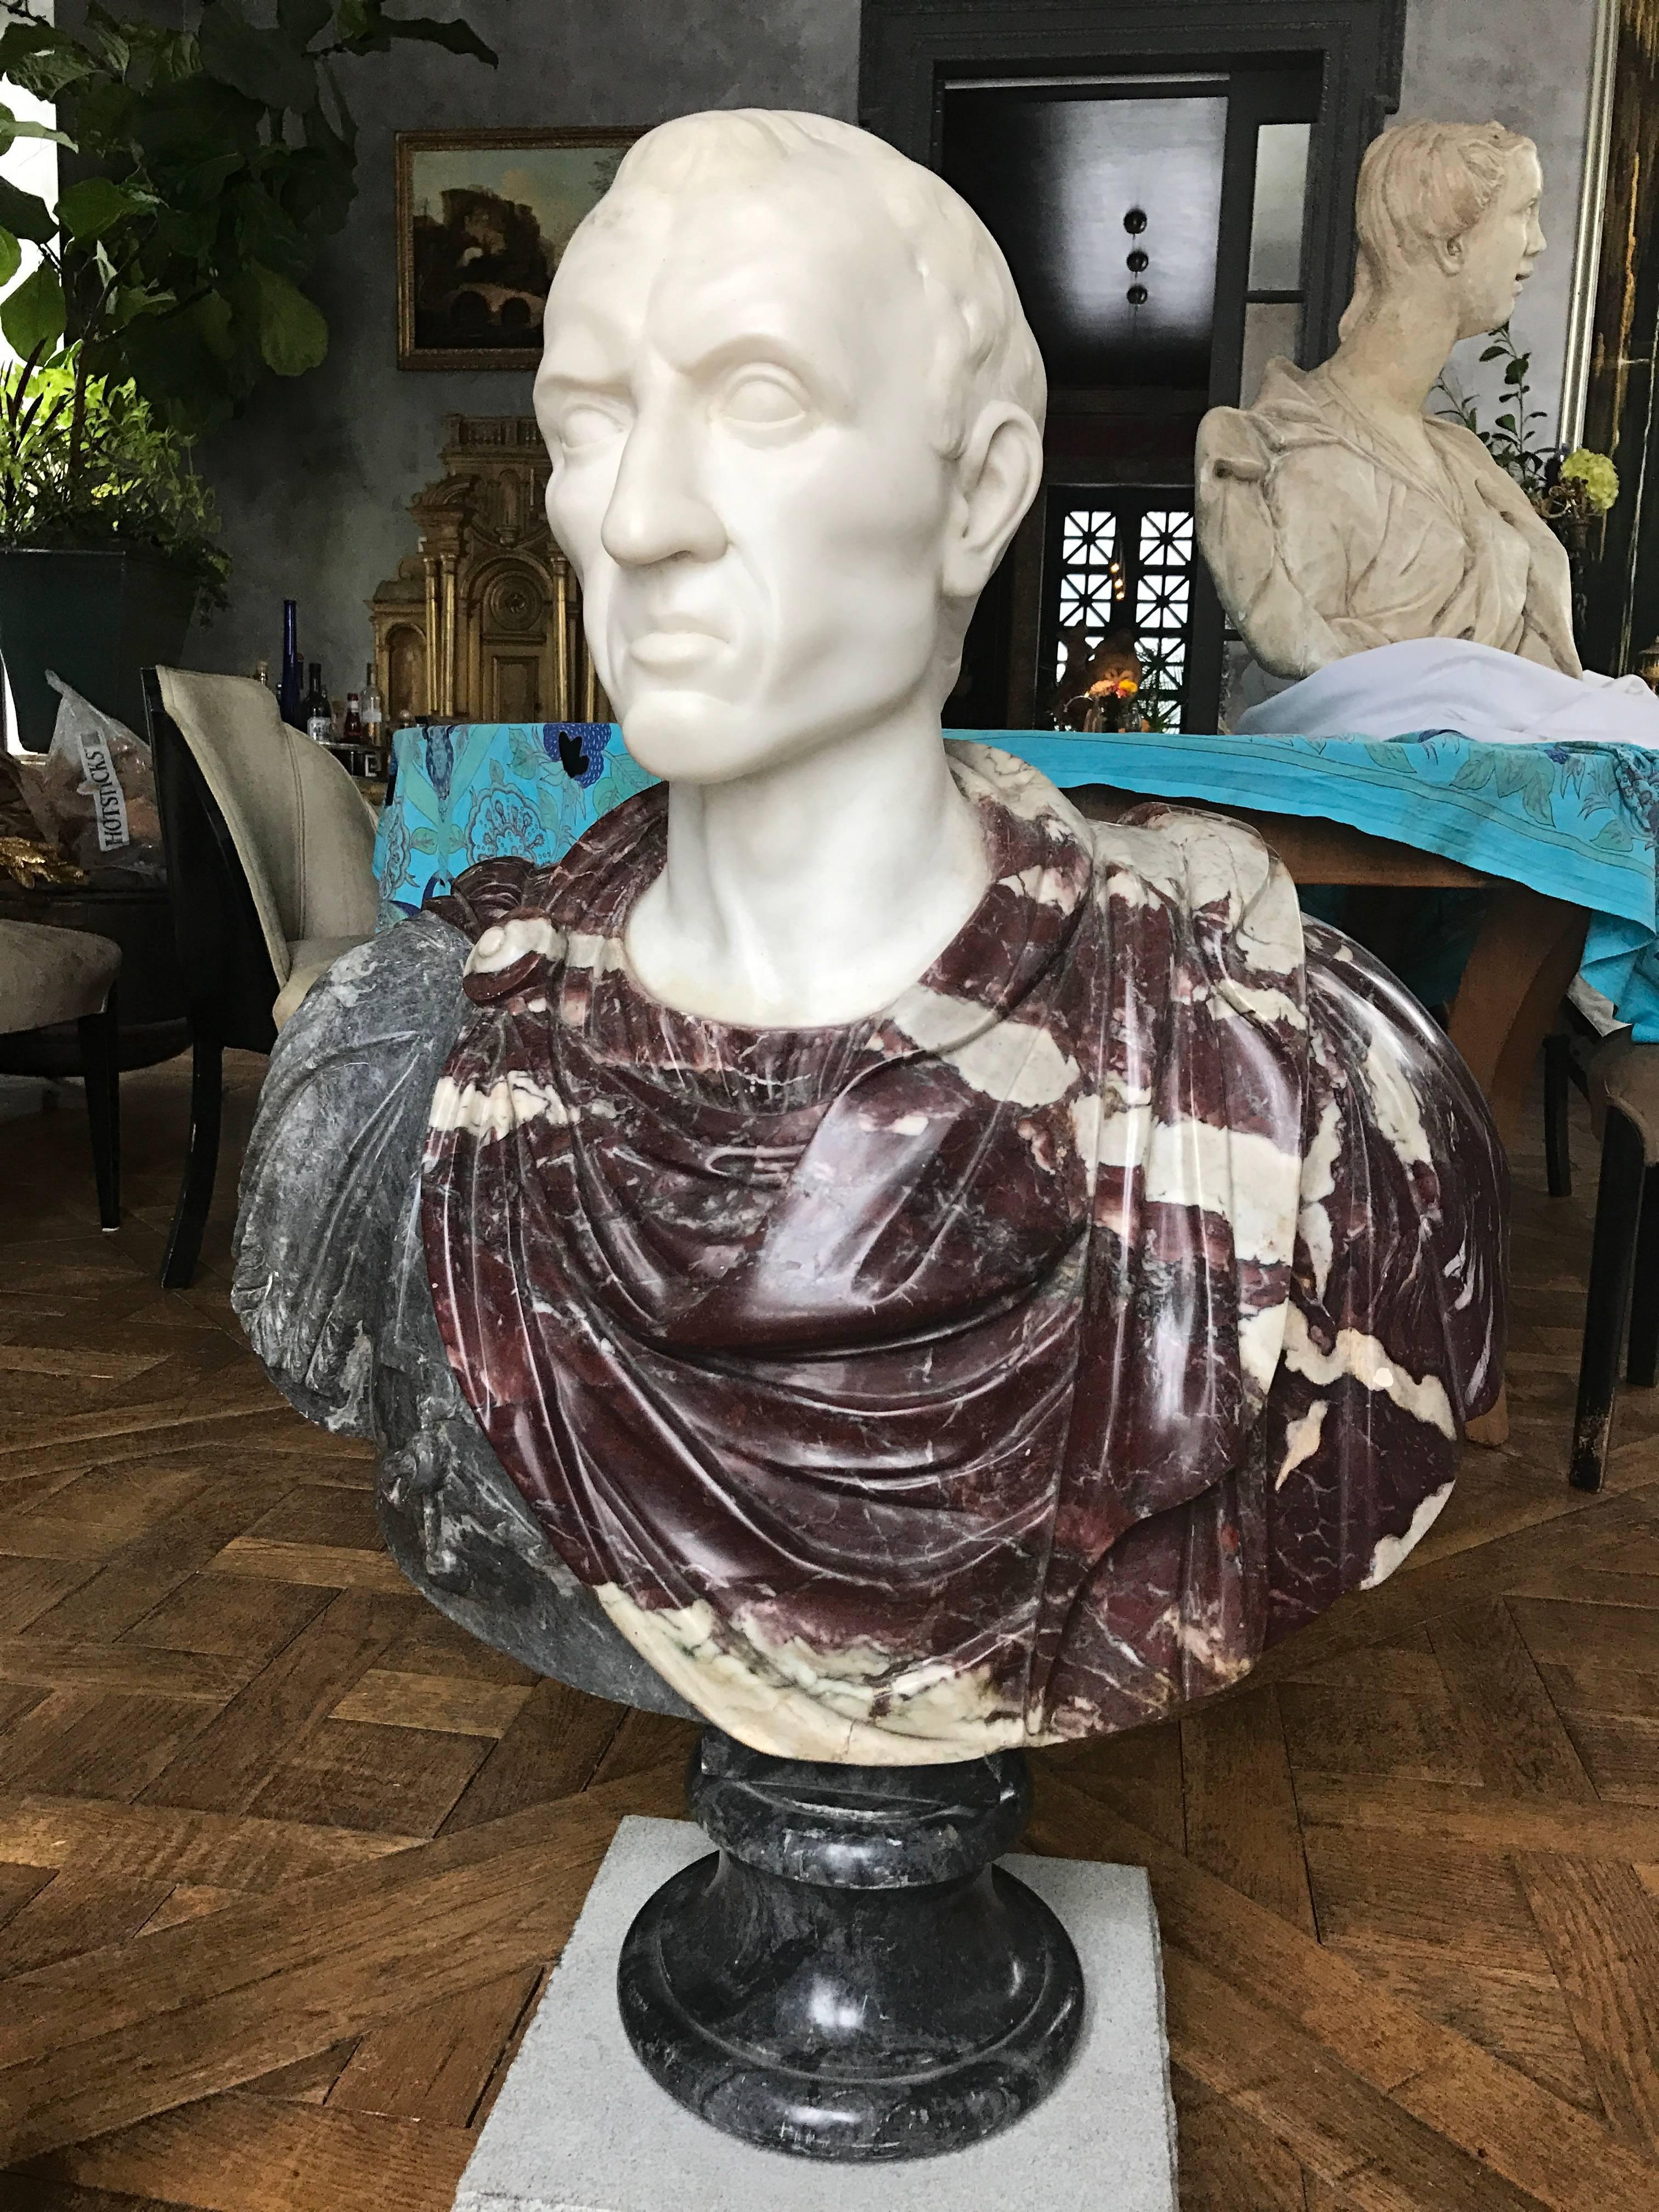 Ce très beau buste en marbre de 40 pouces a été sculpté à la main en Italie à l'époque du Grand Tour. En marbres rouge-gris et Statuario.
Circa 1860.
Il s'agit peut-être de Marcus Junius Brutus le Jeune.